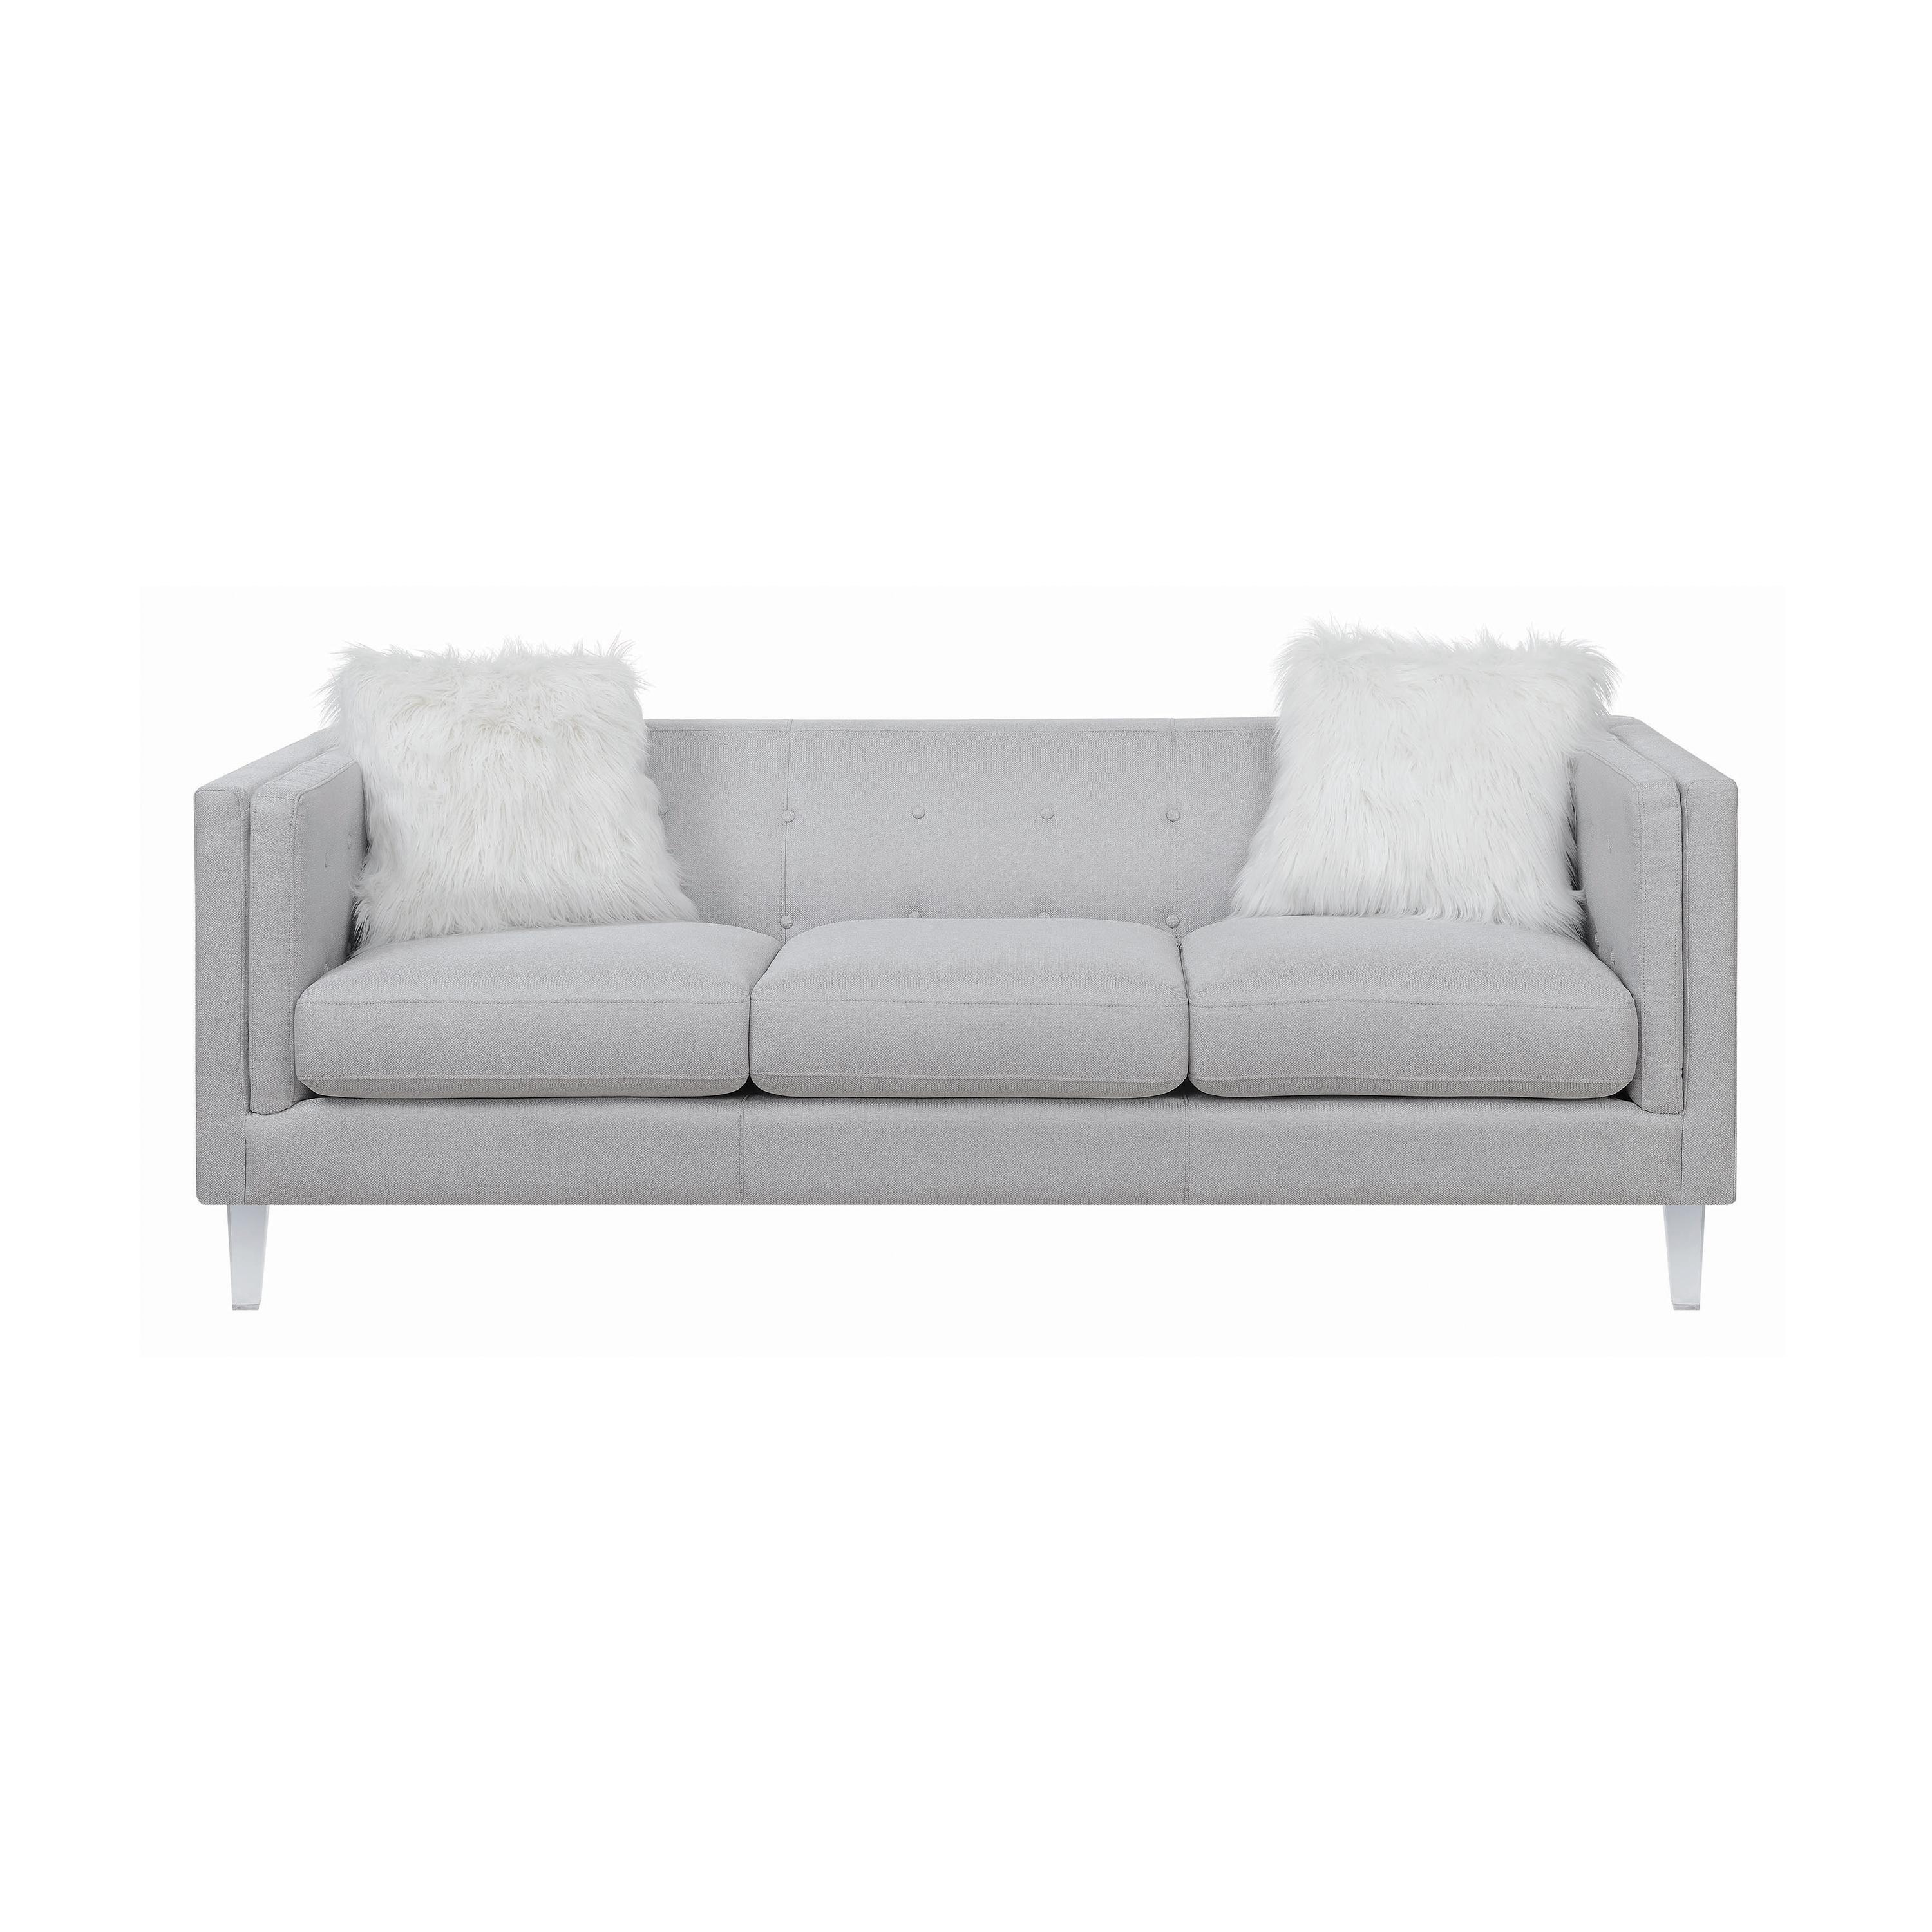 Modern Sofa 508881 Glacier 508881 in Light Gray 